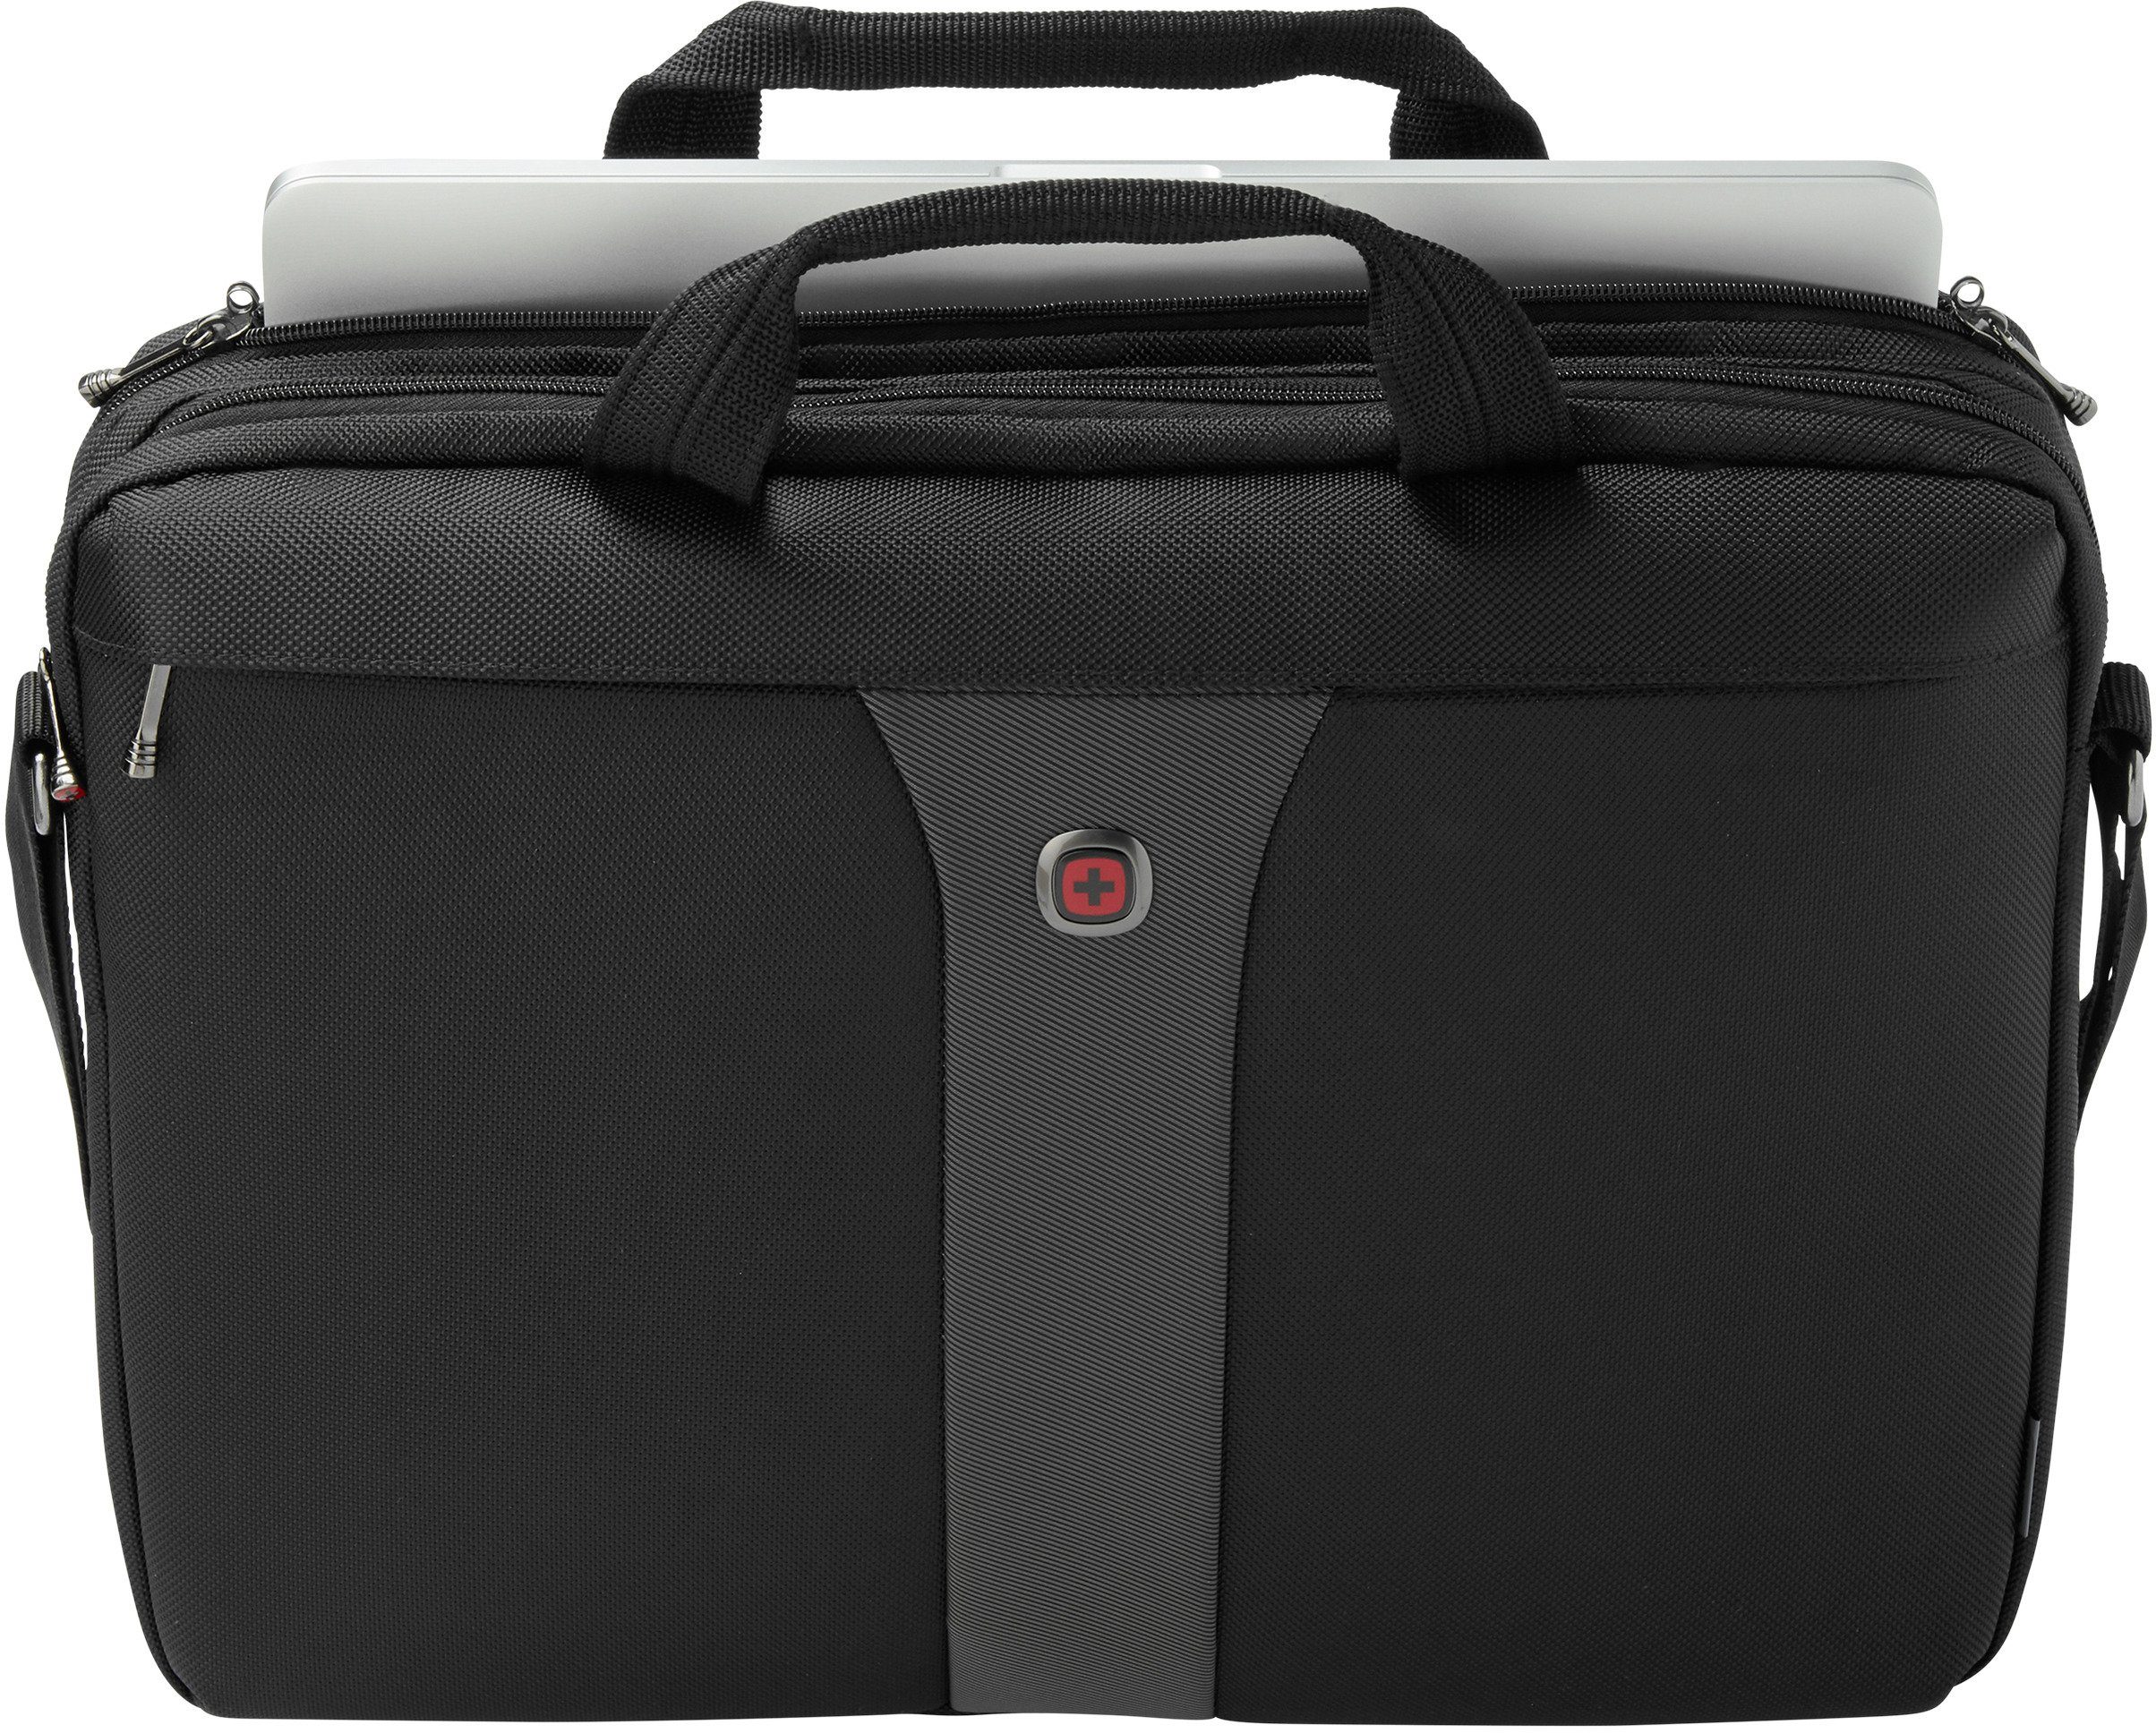 Wenger Schutzsystem mit schwarz/grau, Legacy, Laptopfach und 17-Zoll ShockGuard Laptoptasche